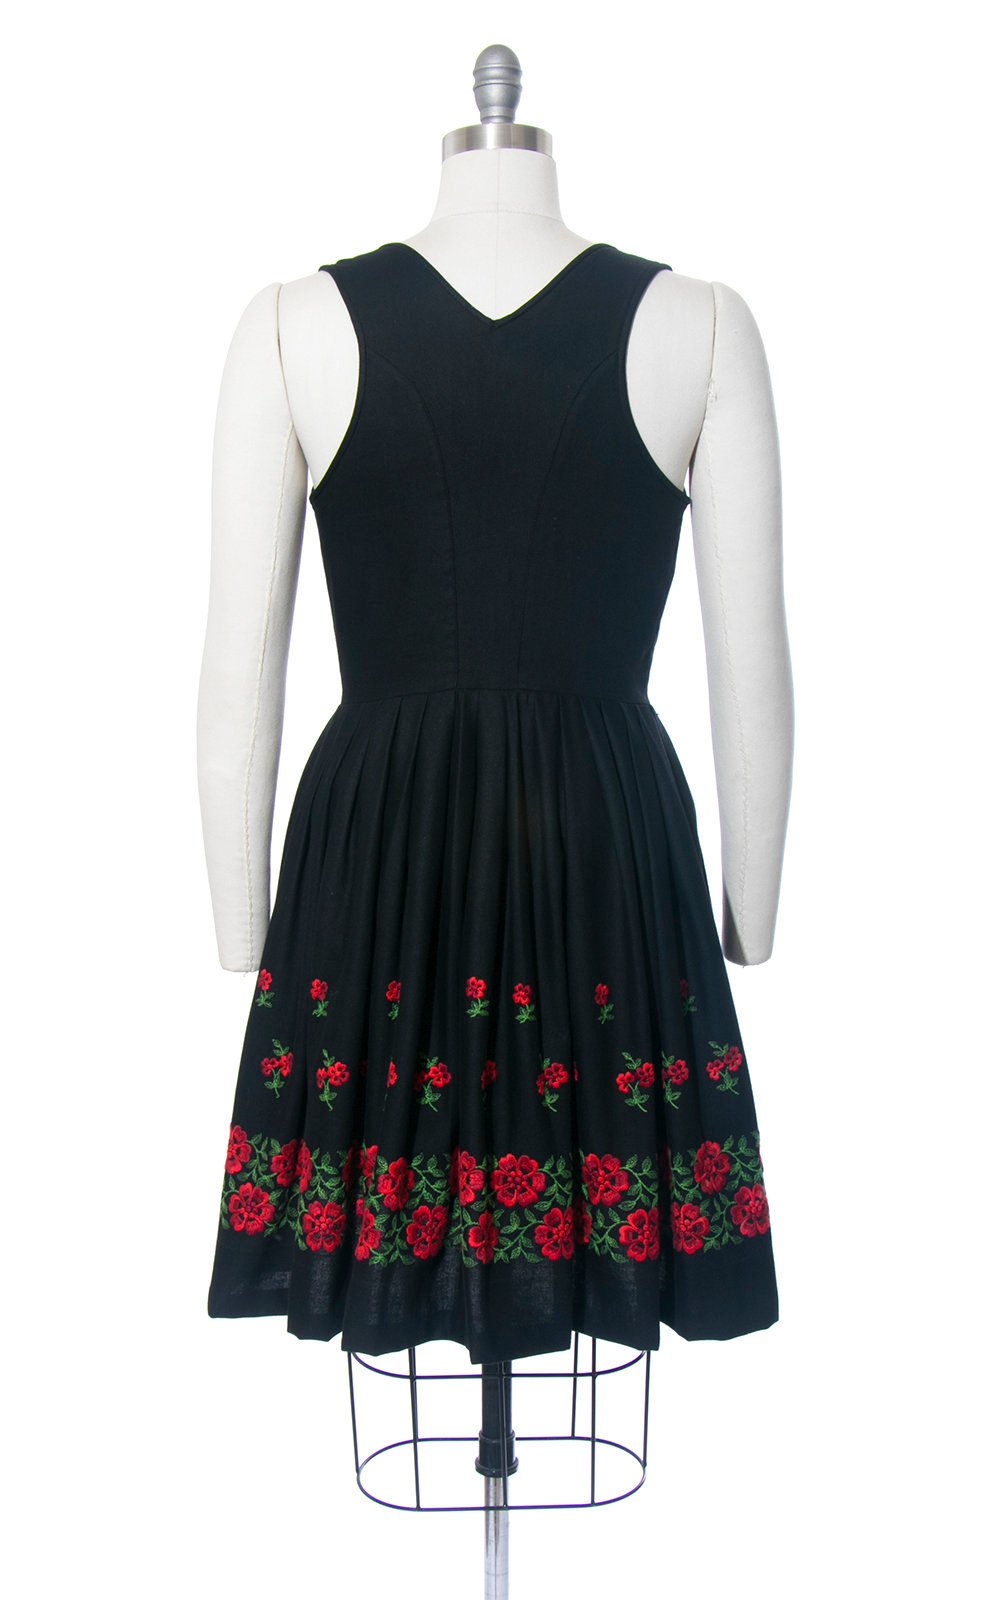 Vintage 1960s Dirndl Dress | 60s Floral Embroidered Border Print Cotton Sundress Black Red Full Skirt Oktoberfest Dirndl (medium)